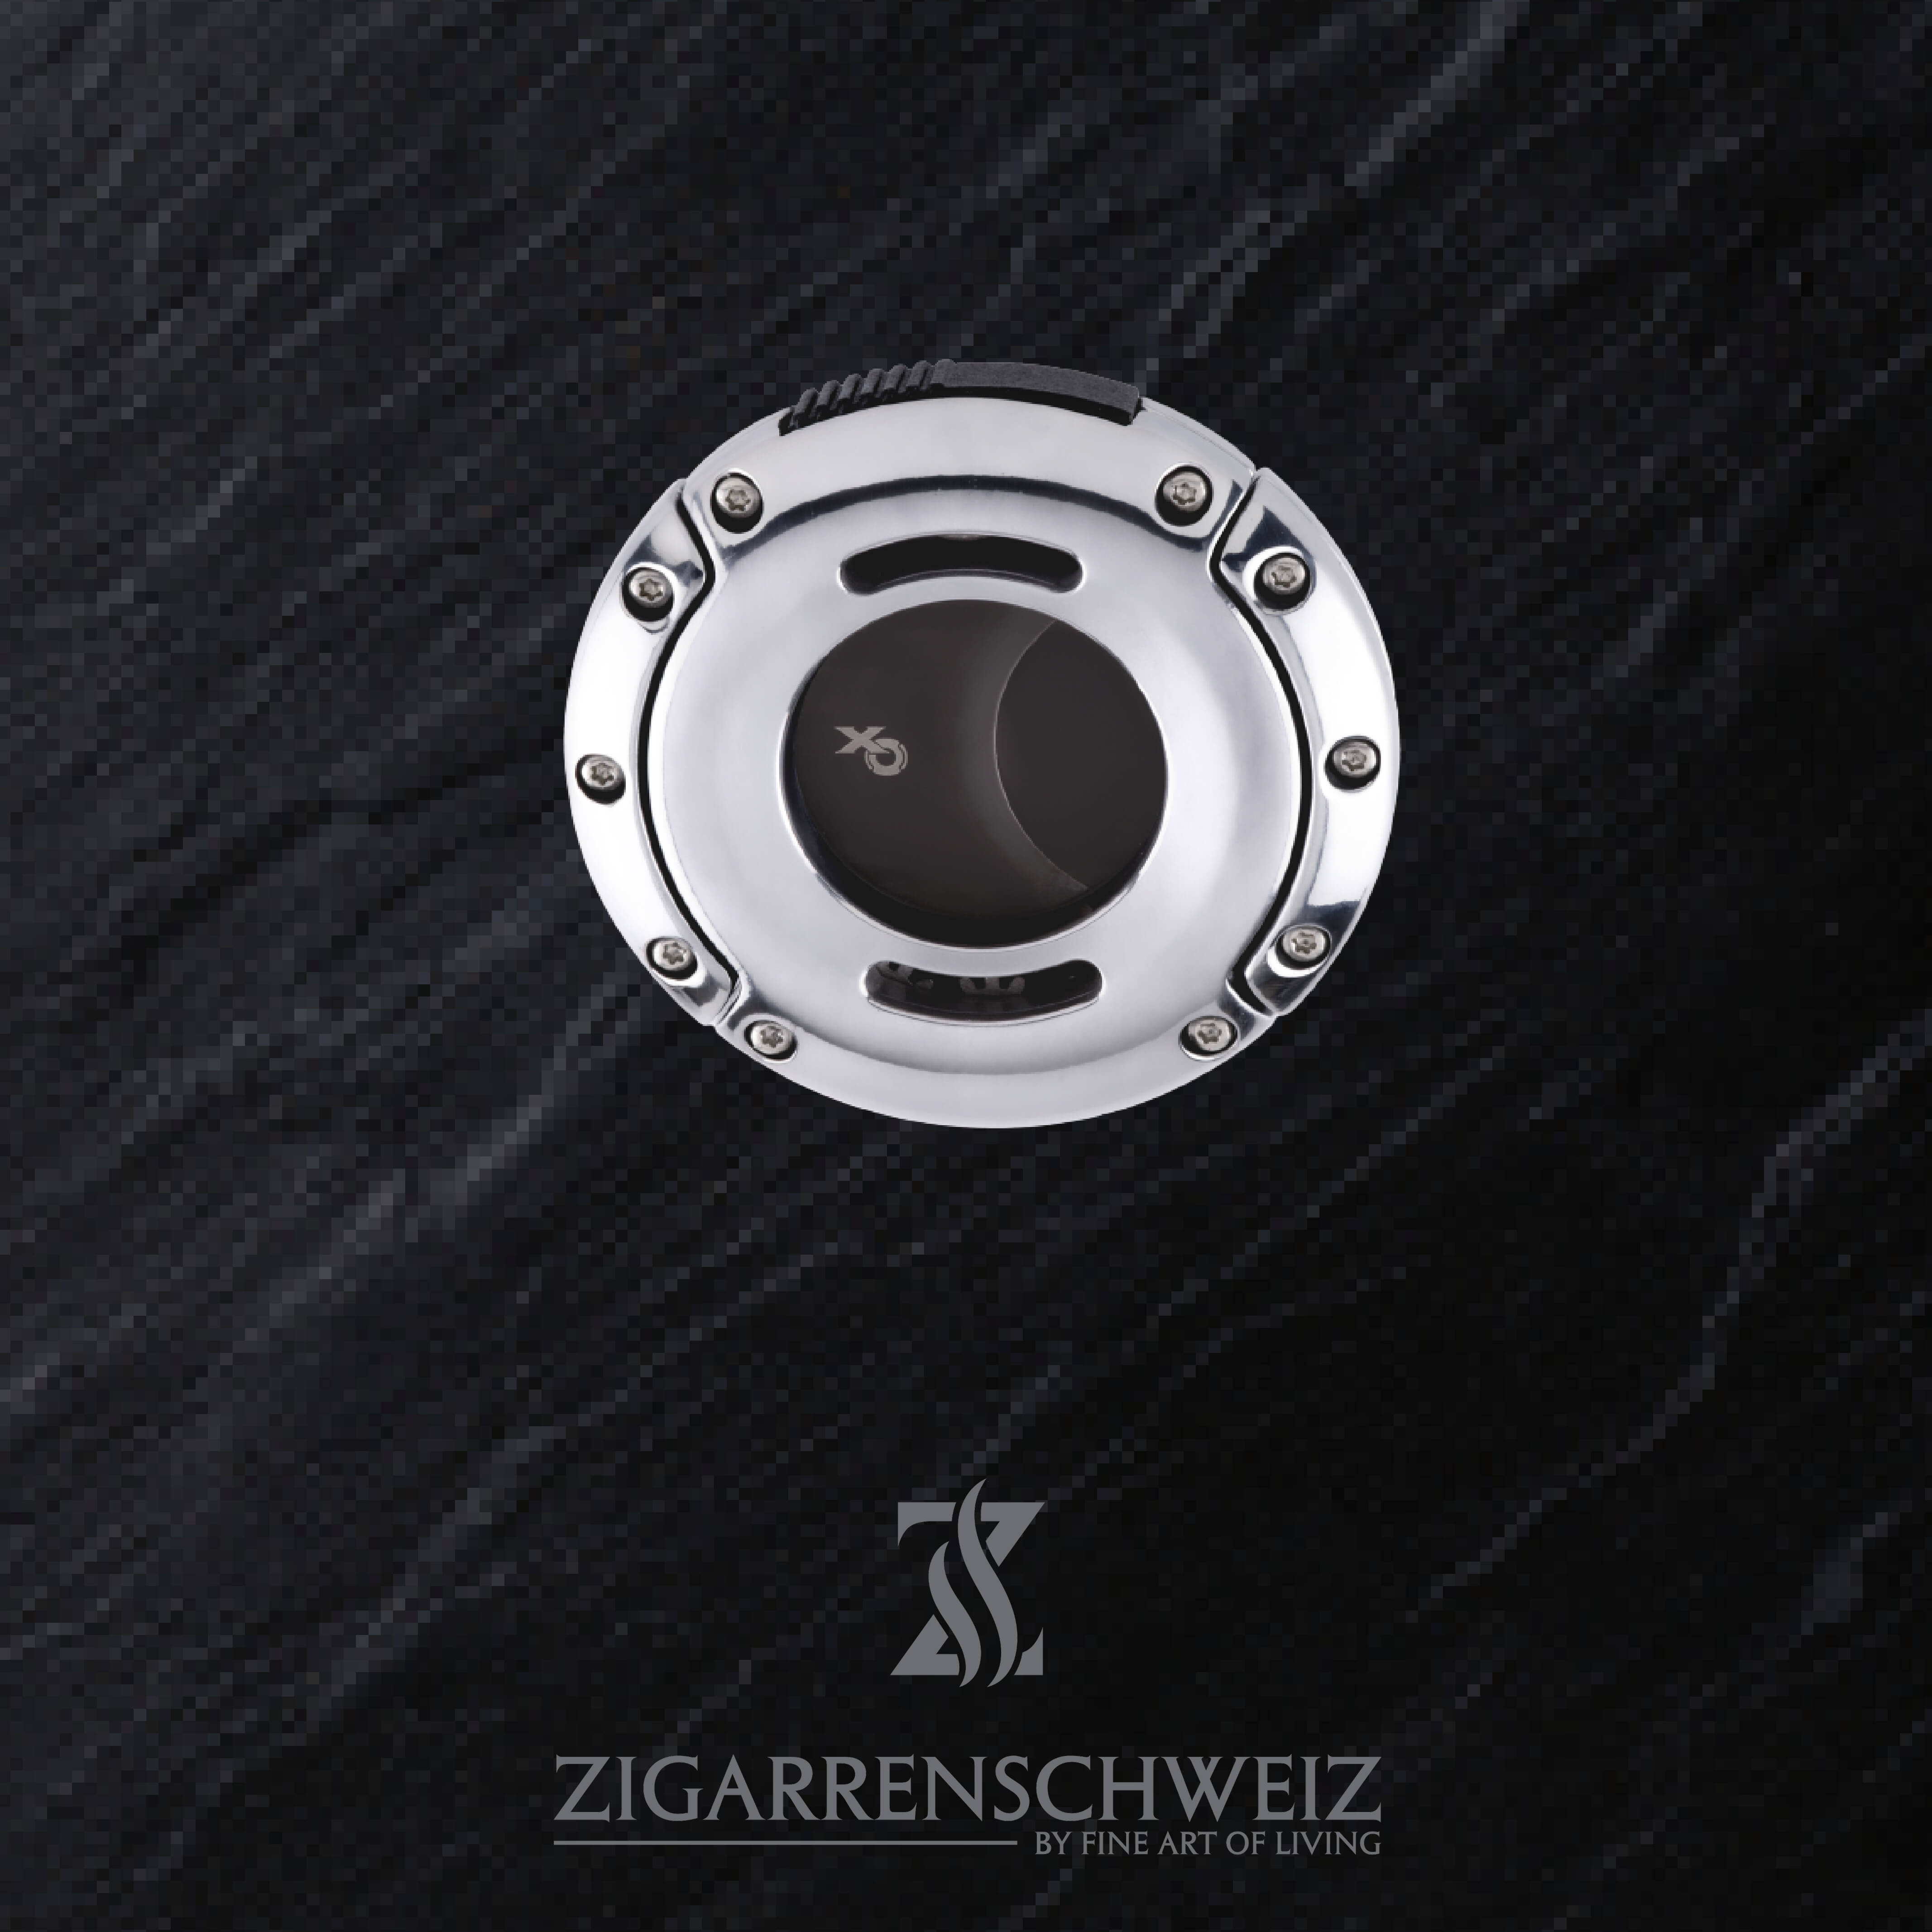 Xikar XO Zigarren Cutter, Farbe Gehäuse: Chrom, Farbe Klingen: Schwarz, geschlossen